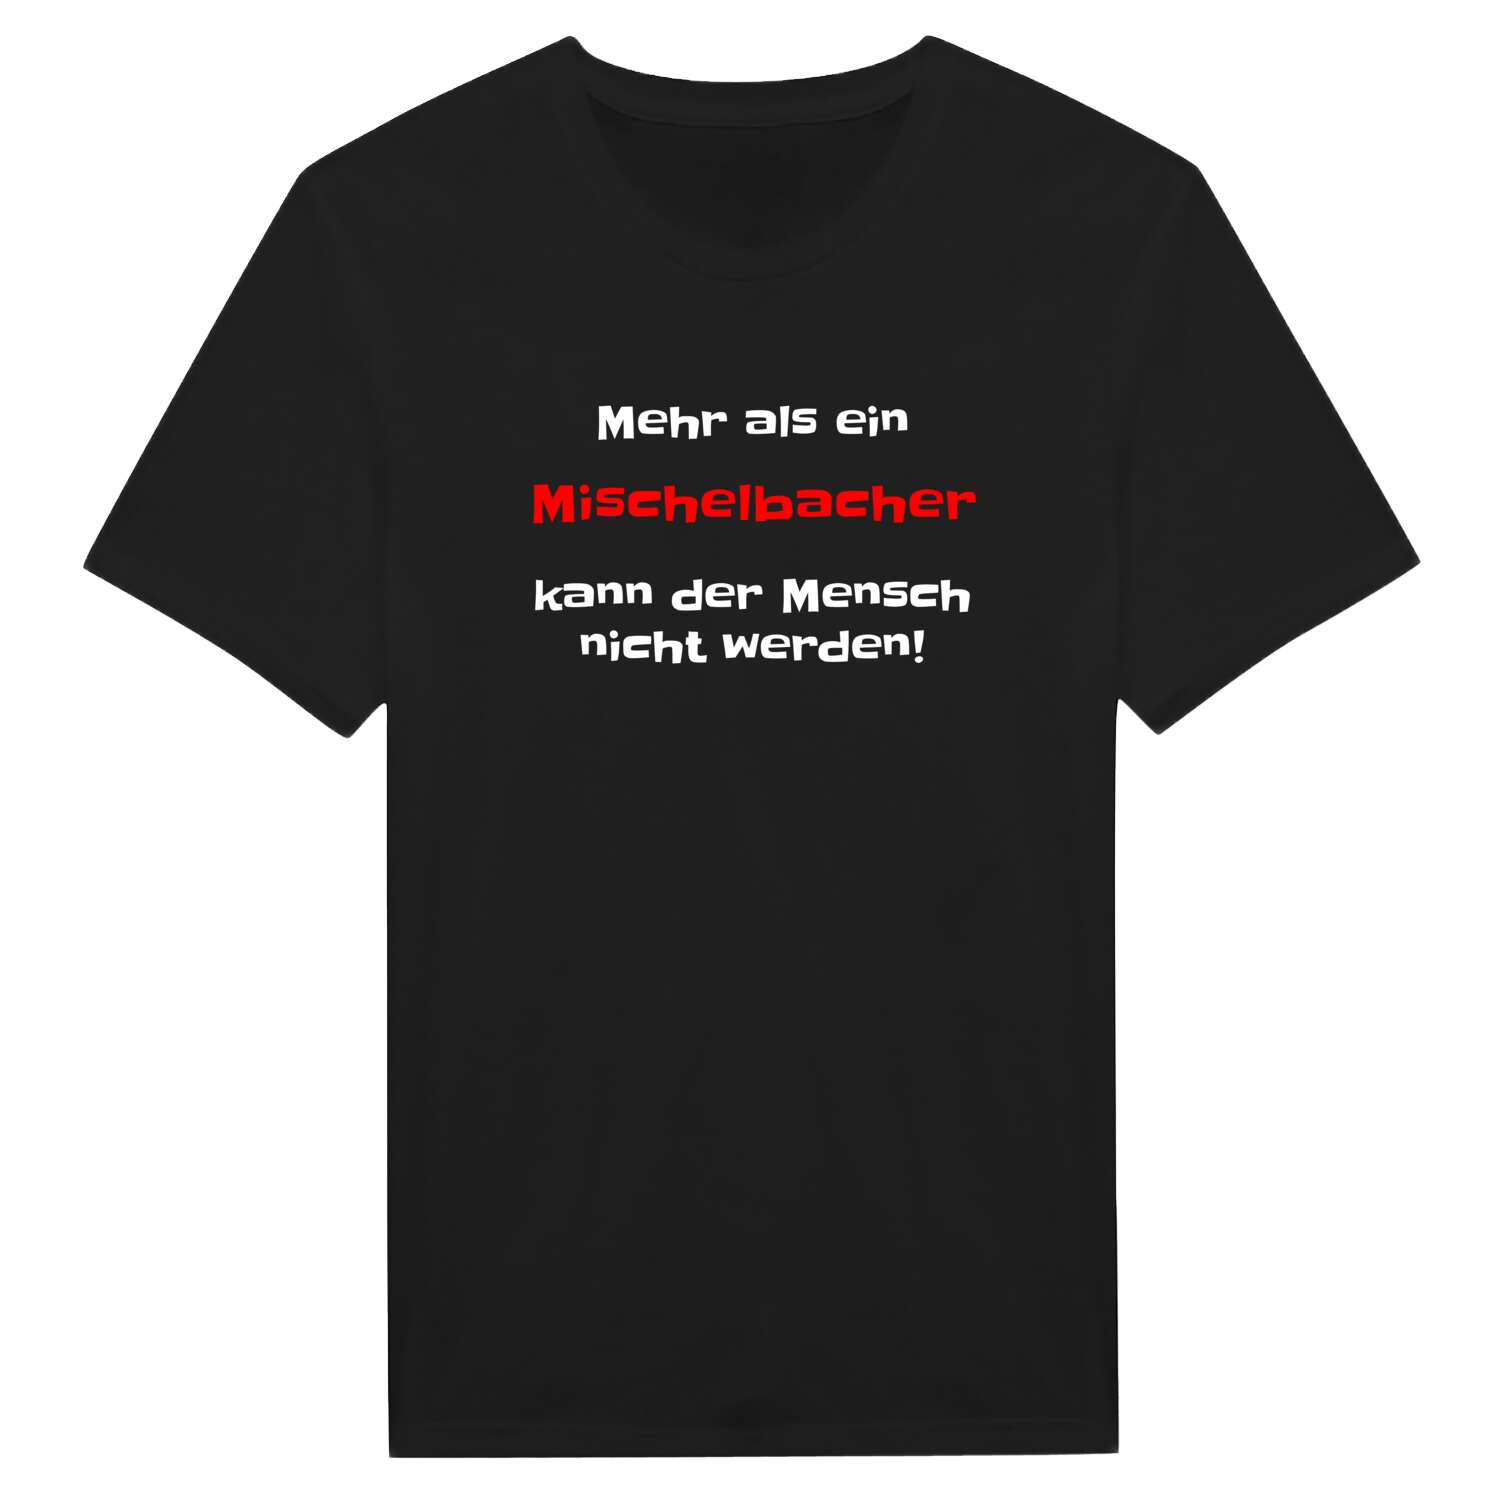 Mischelbach T-Shirt »Mehr als ein«